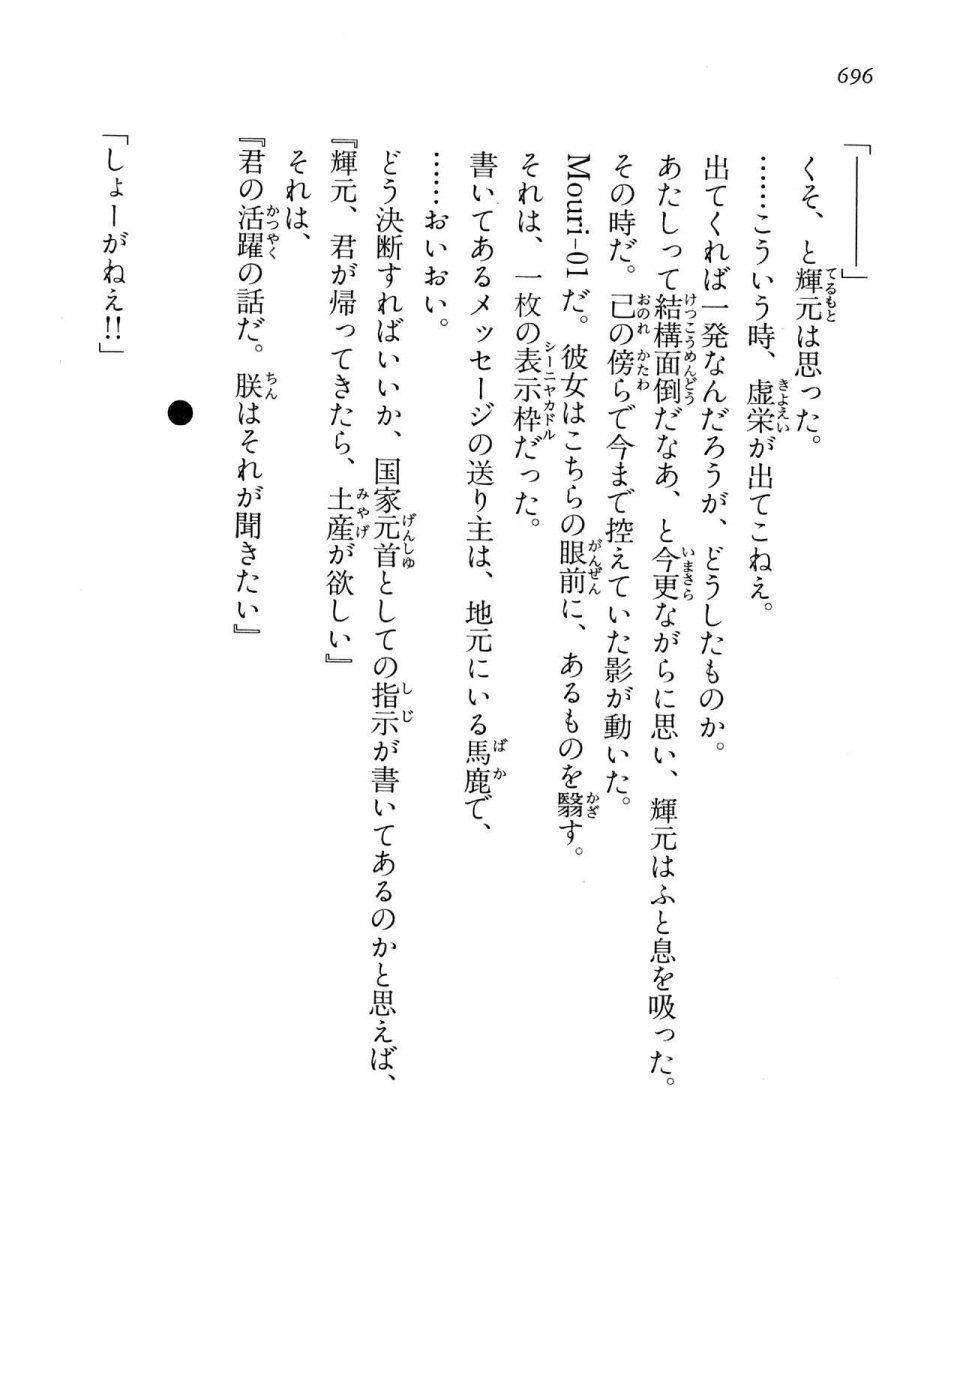 Kyoukai Senjou no Horizon LN Vol 13(6A) - Photo #696